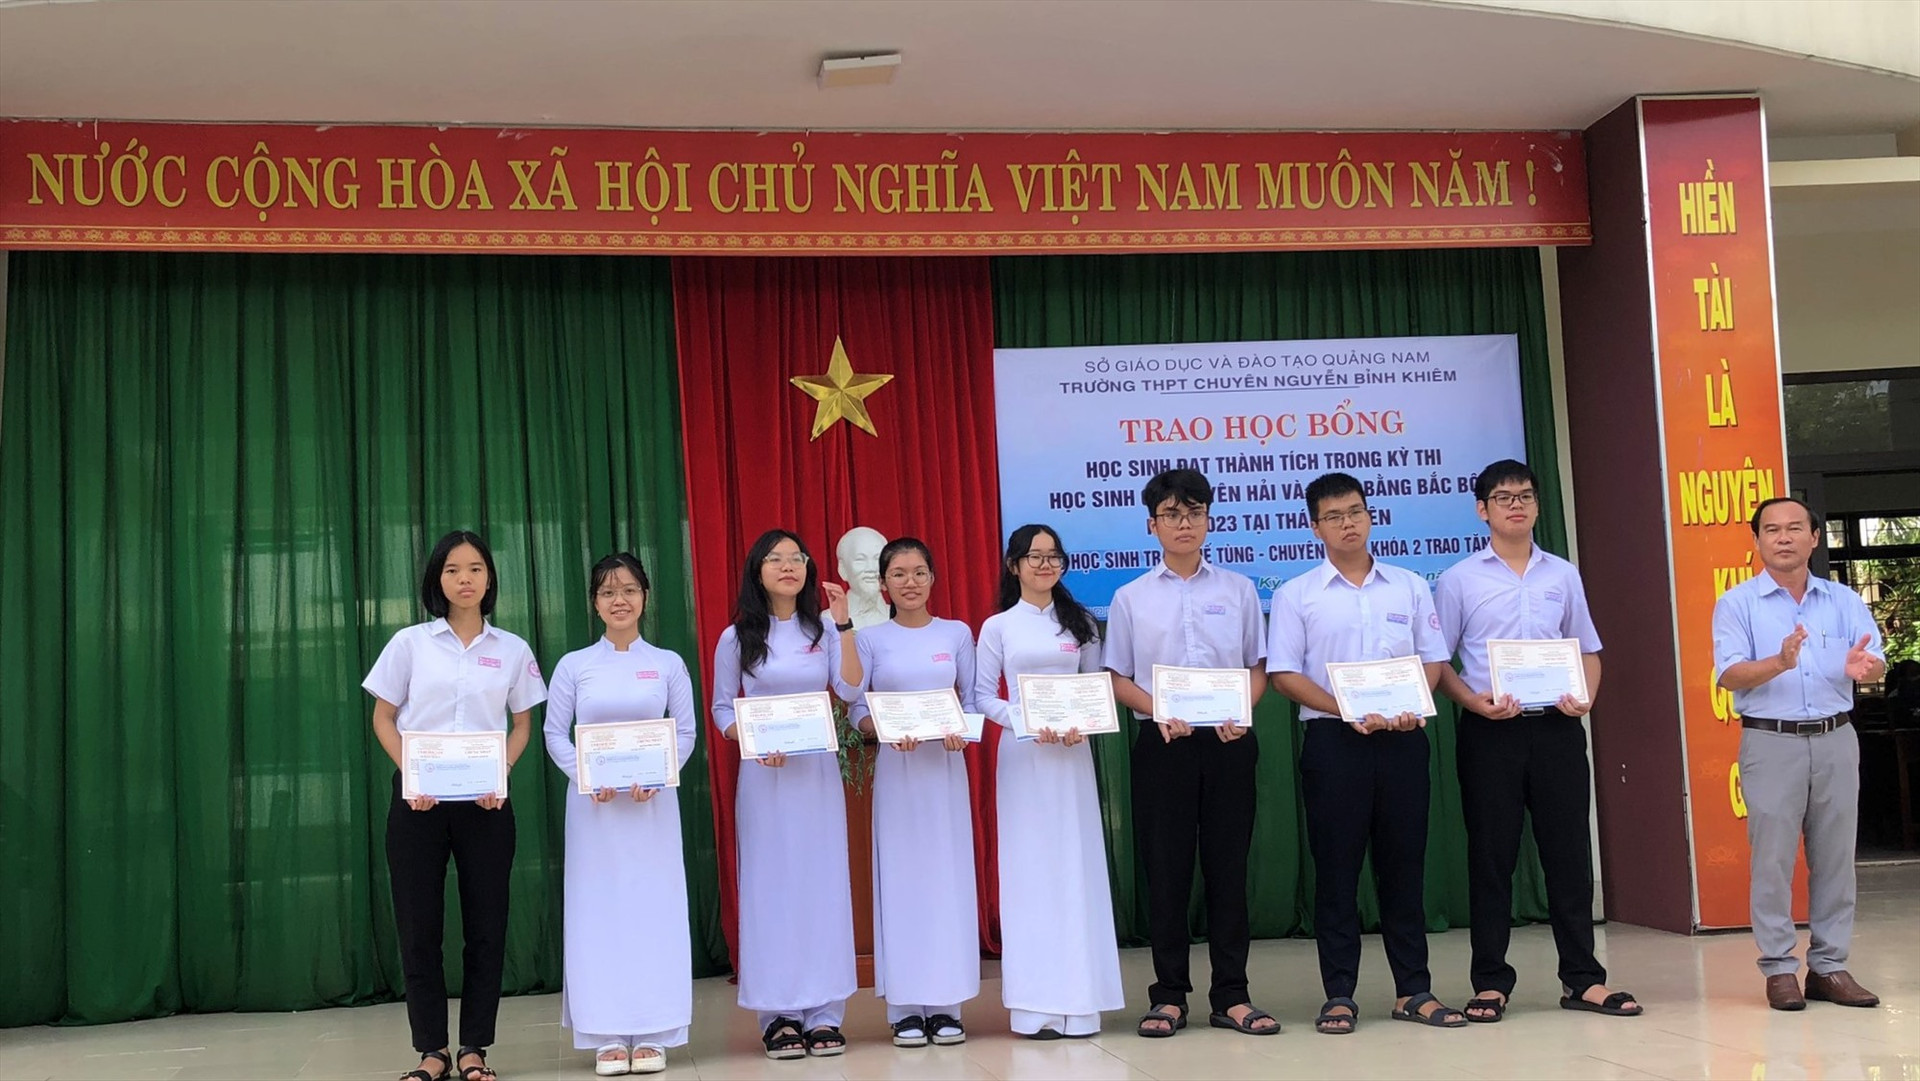 Từ nguồn hỗ trợ của anh Trần Thế Tùng - cựu học sinh chuyên Toán khóa 2, Trường THPT chuyên Nguyễn Bỉnh Khiêm trao học bổng cho